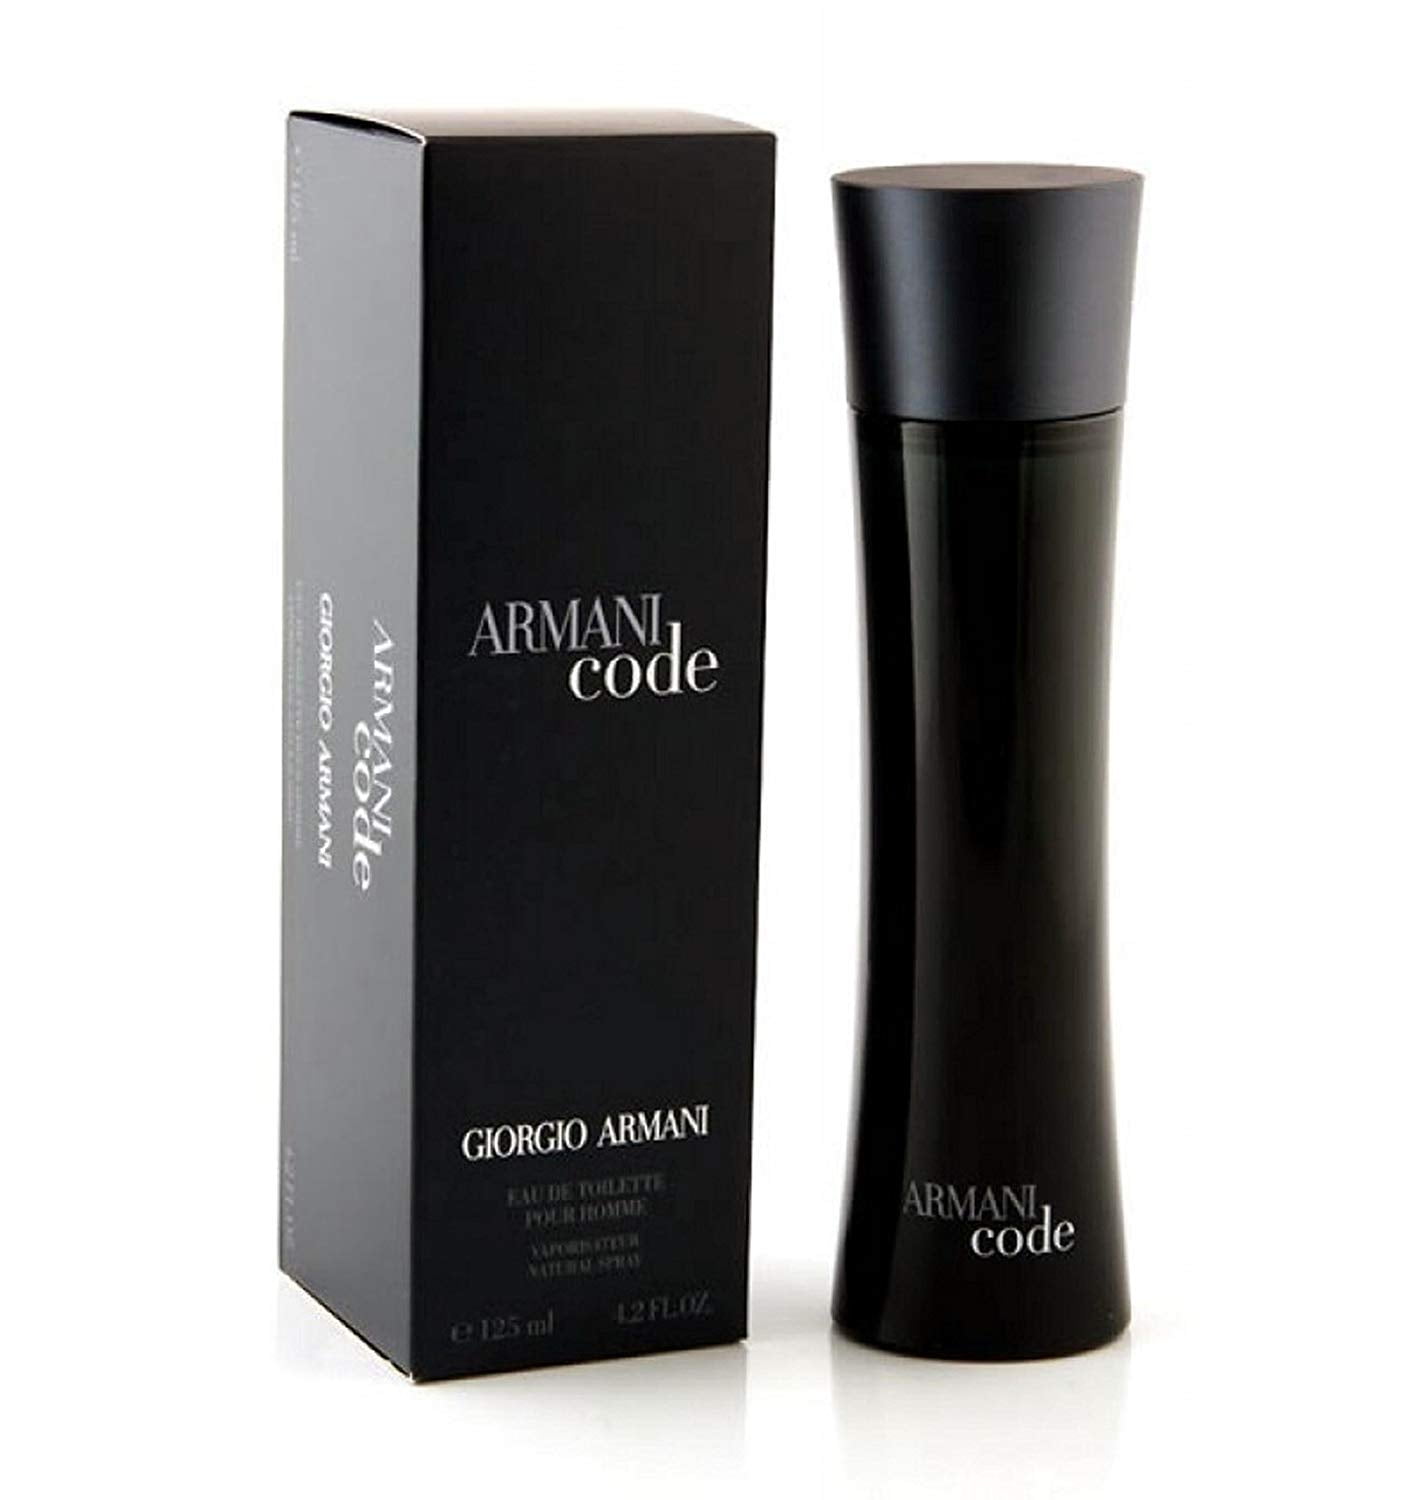 Giorgio Armani Armani Code Colonia Eau de Toilette, Cologne for Men, 4.2 Oz...